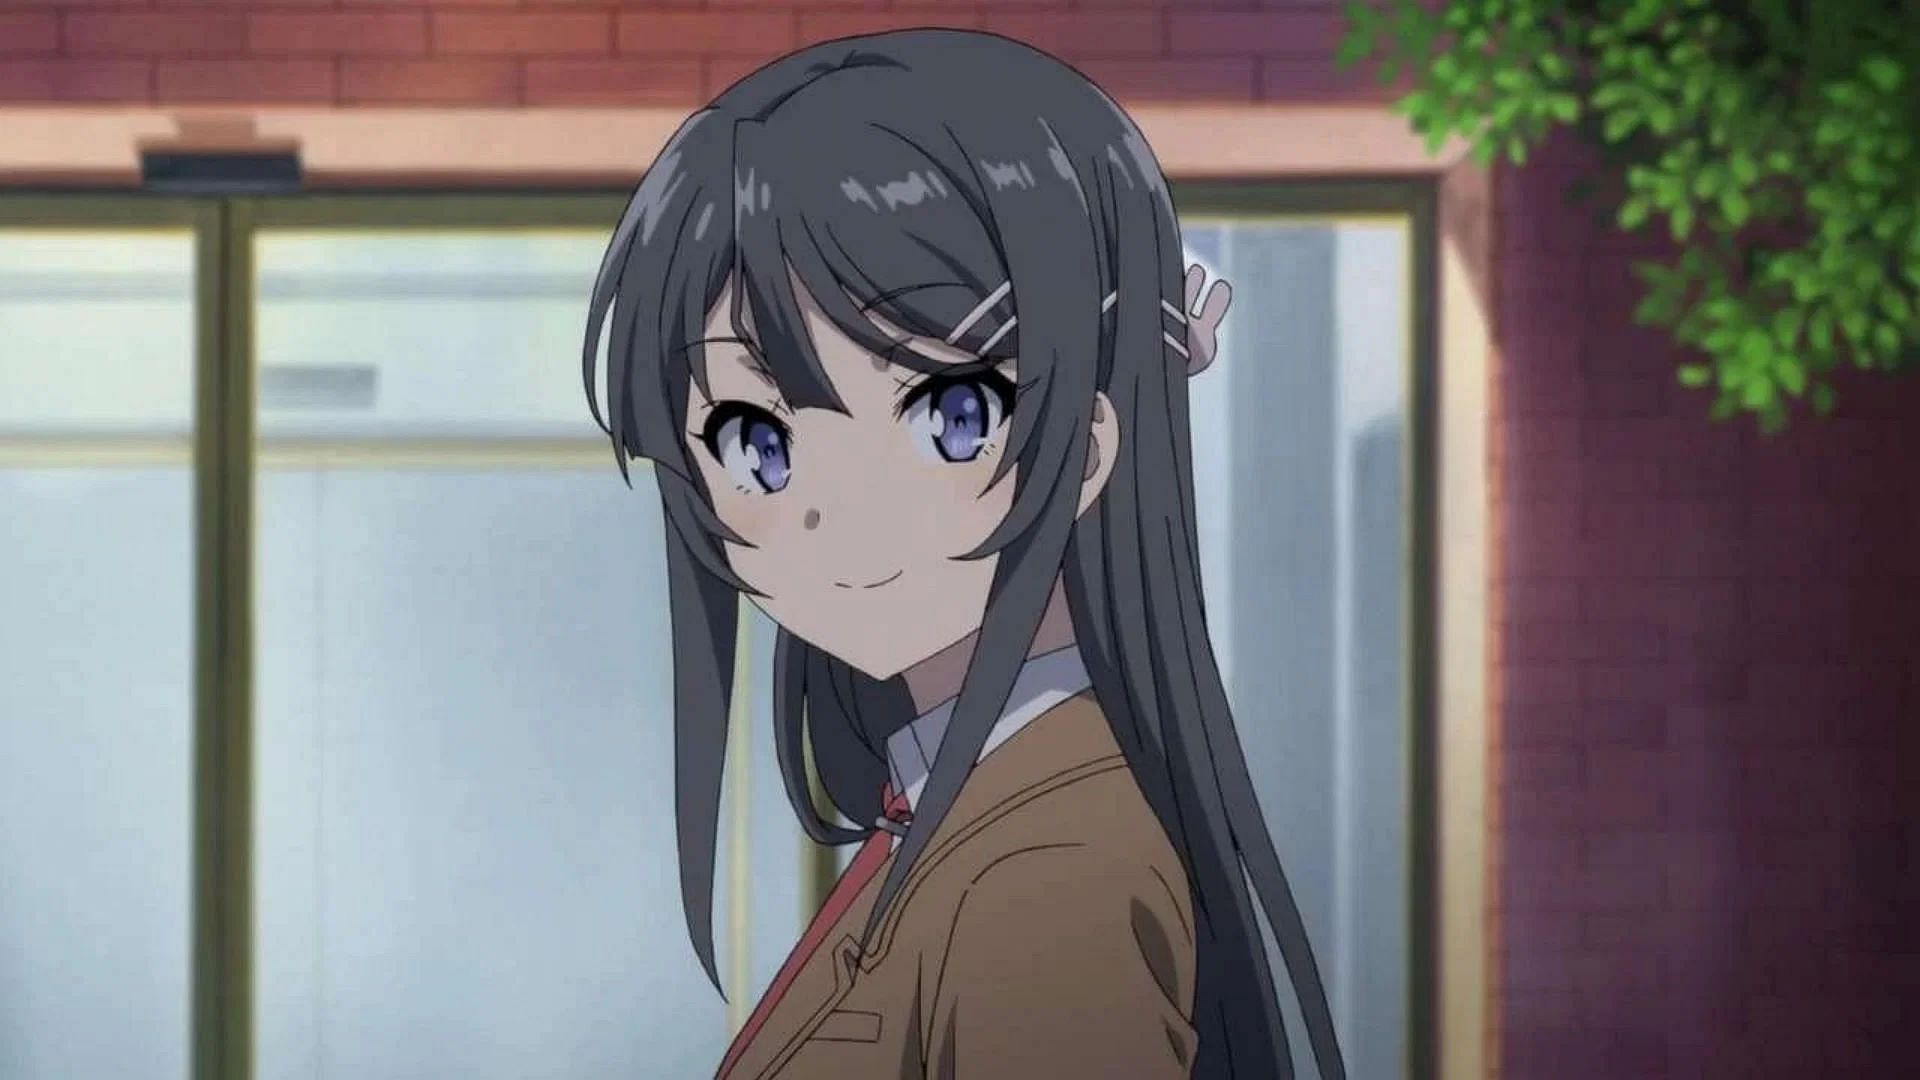 Mai, as seen in the anime (Image via Cloverworks)